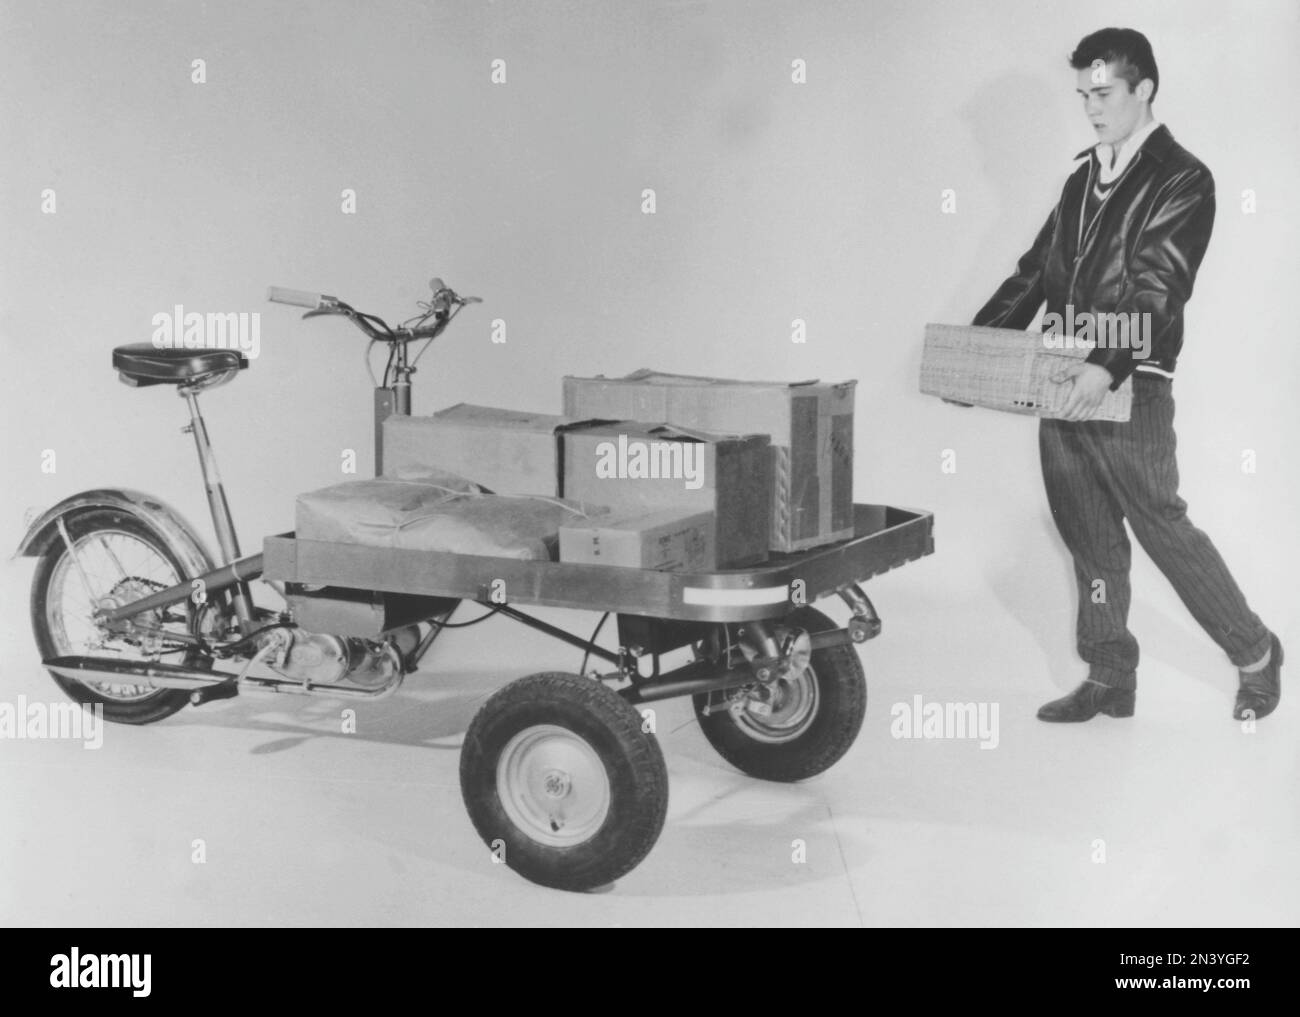 In den 1950er Jahren. Ein schwedischer Hersteller von Mopeds Monark präsentiert sein neues Modell M62, ein Moped mit einer Plattform vor dem Fahrzeug, auf der Pakete und Pakete platziert werden können. Schweden 1958 Stockfoto